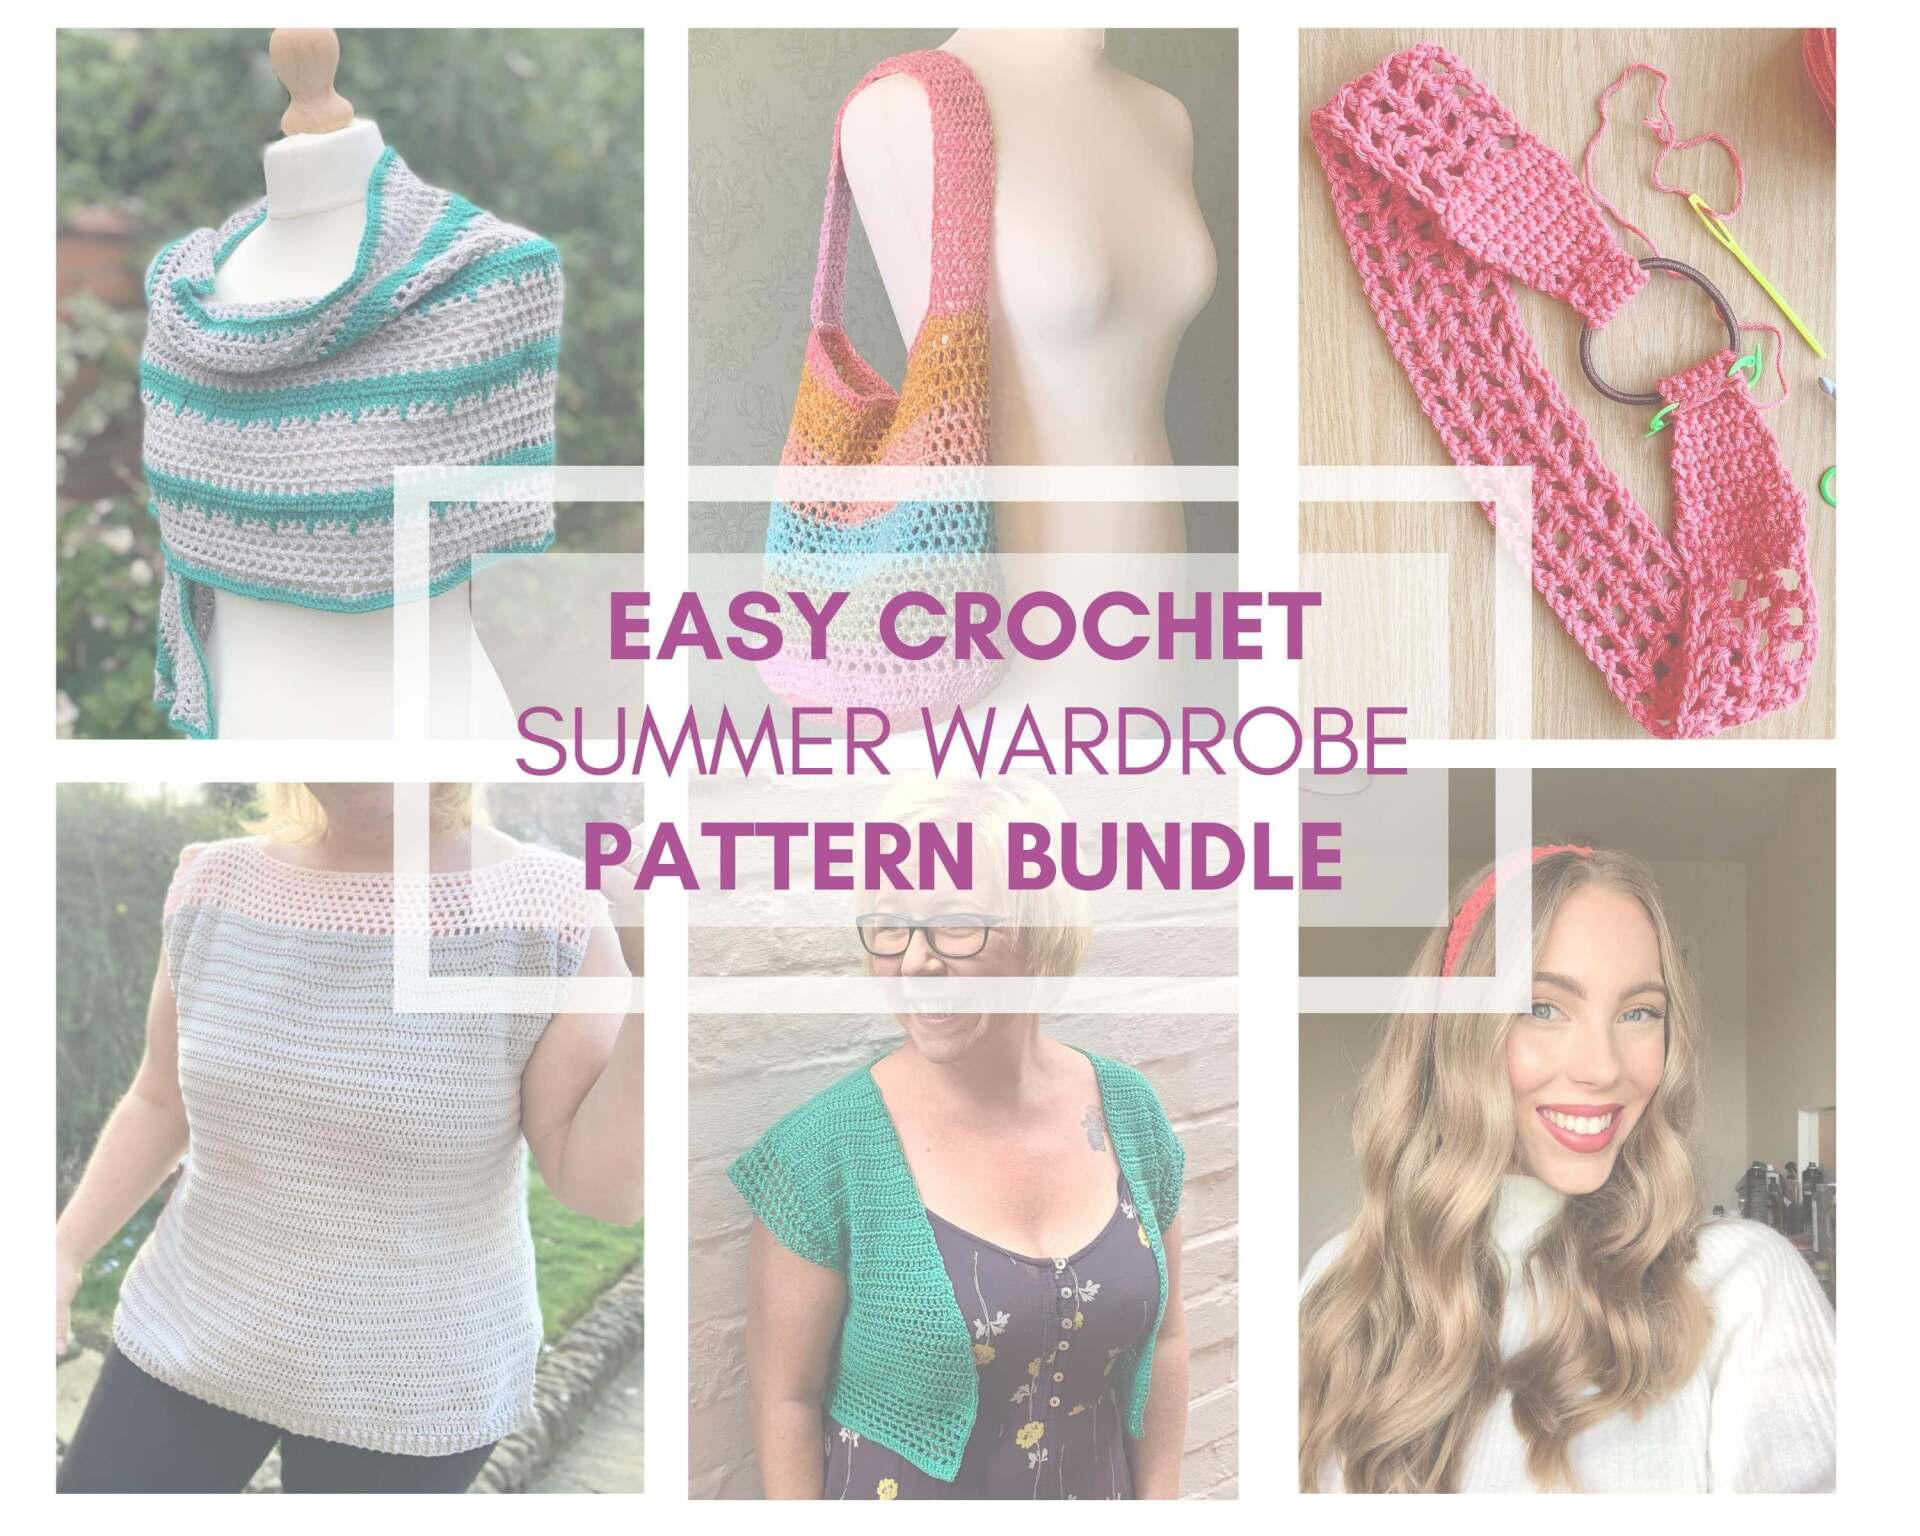 5 Easy Crochet patterns for summer